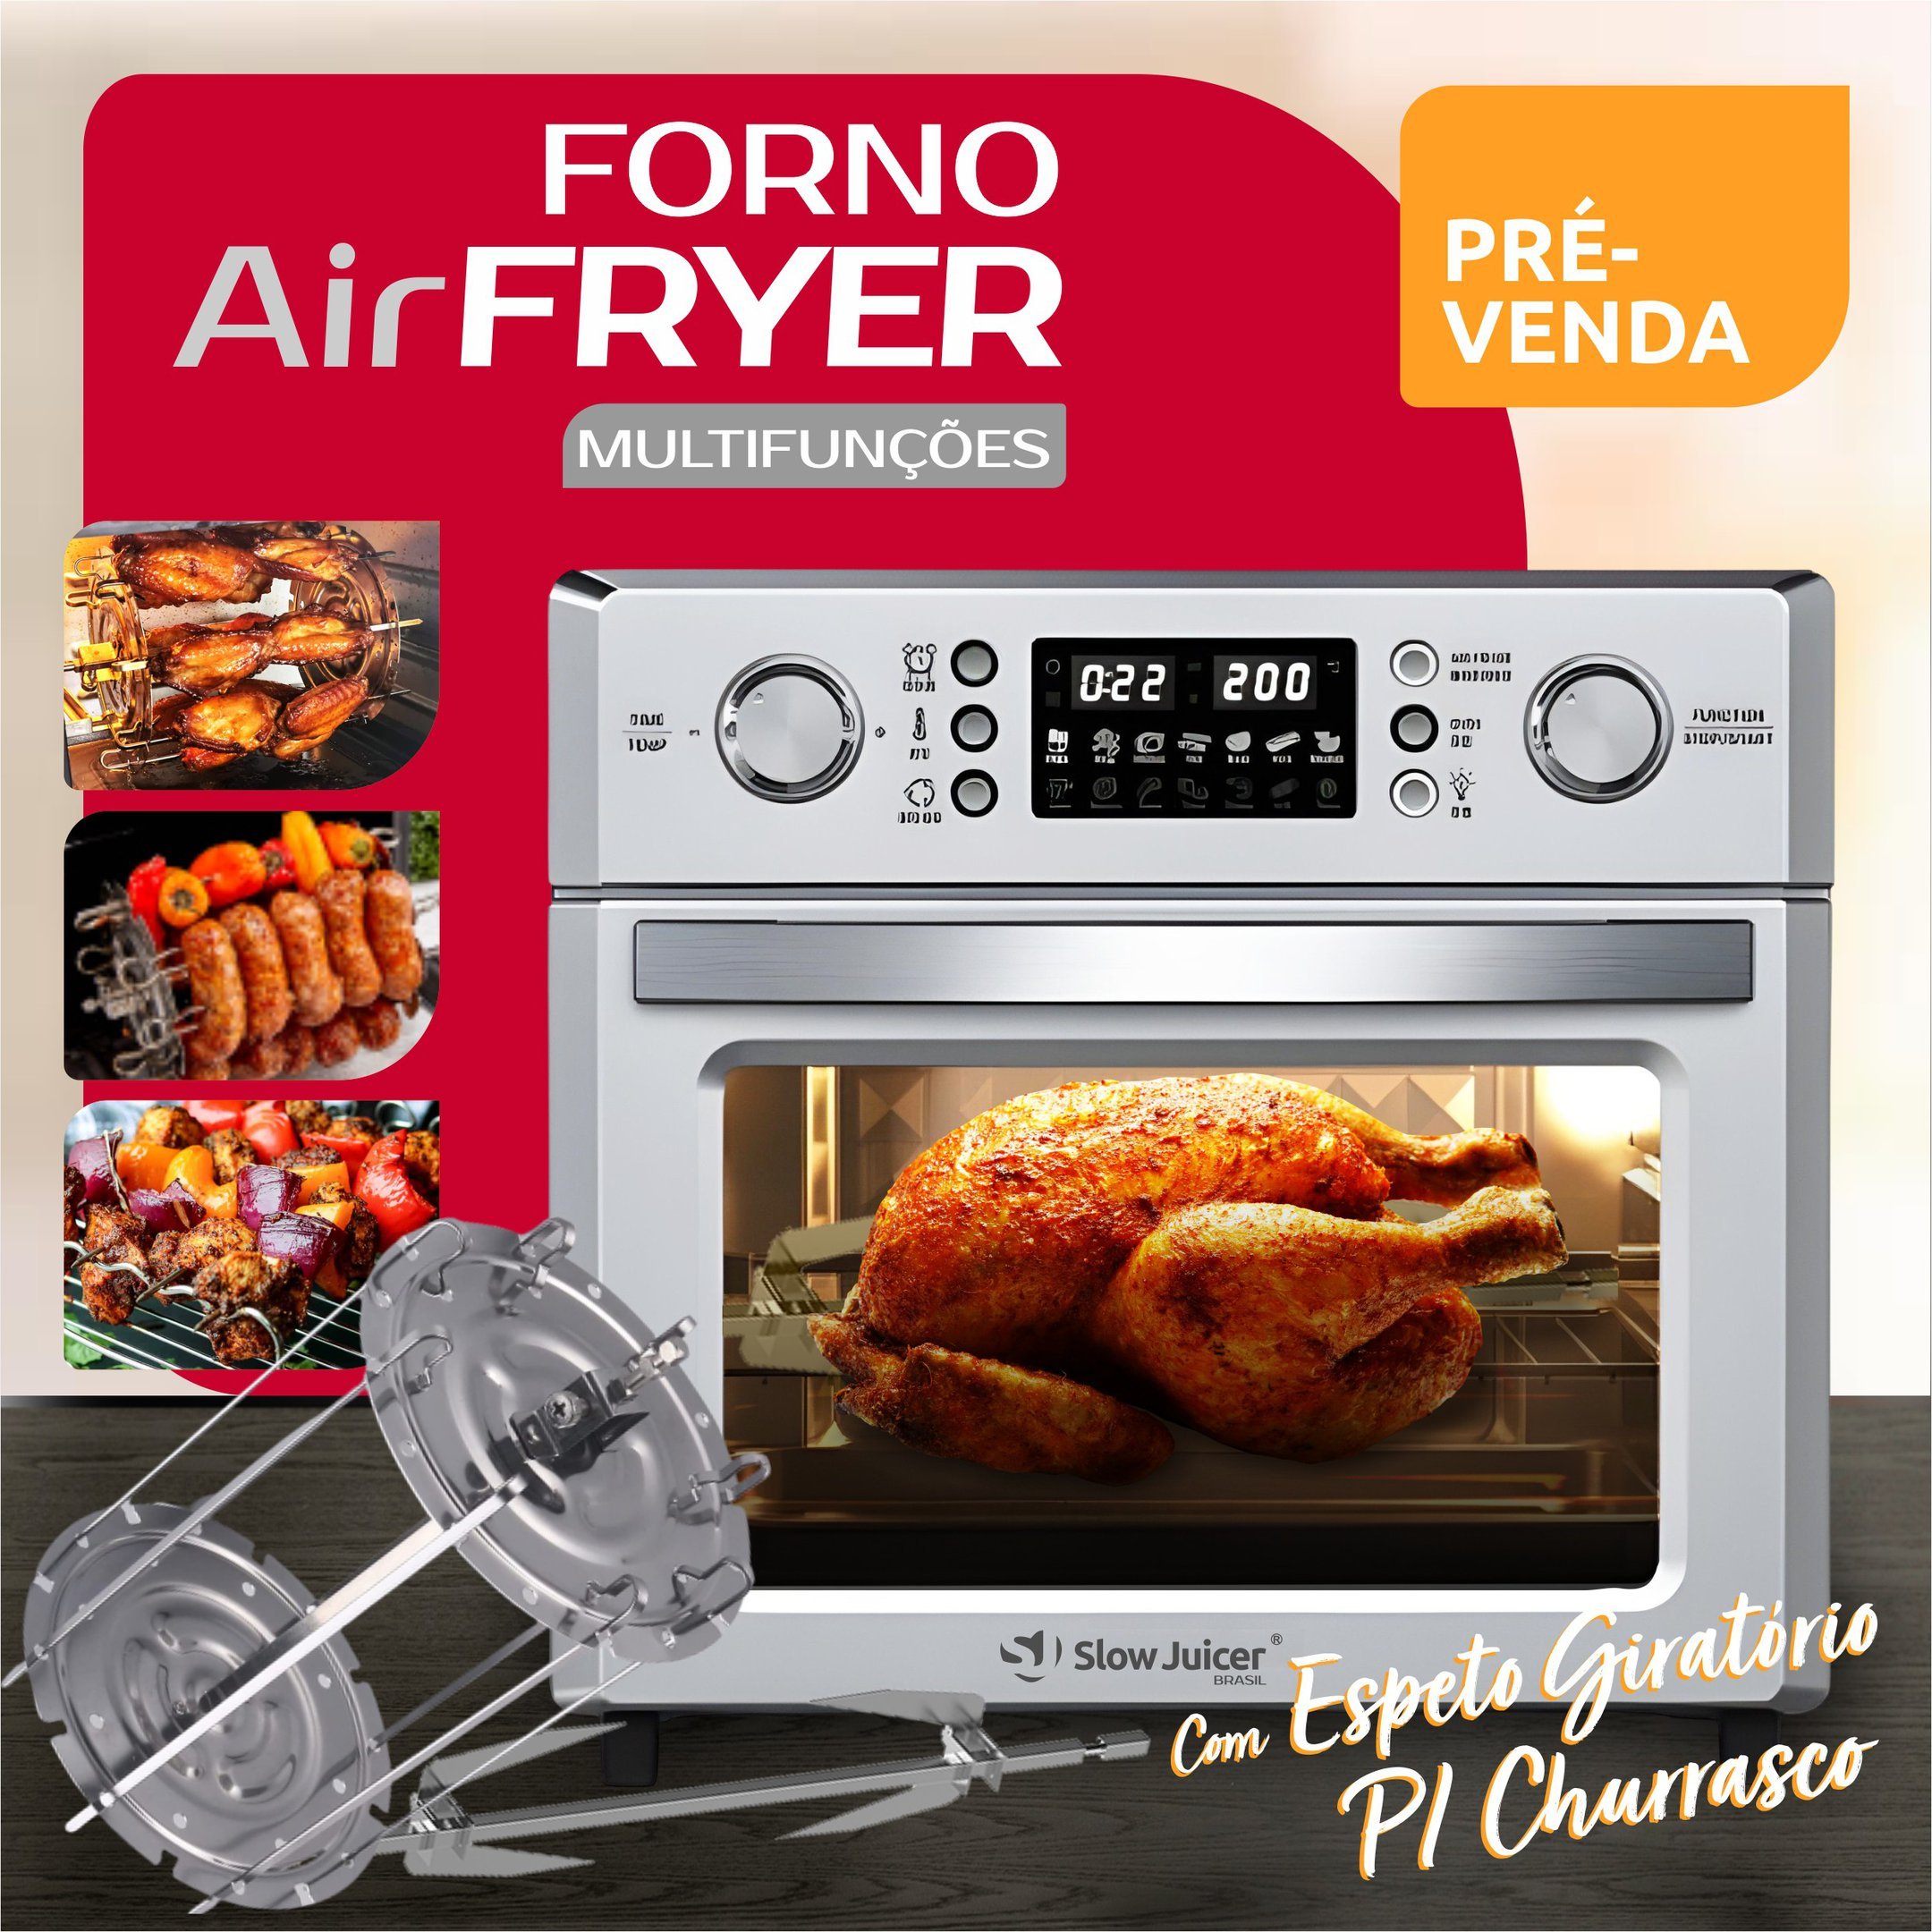 Forno Air Fryer c/ Espeto para Churrasco - 110v - 4